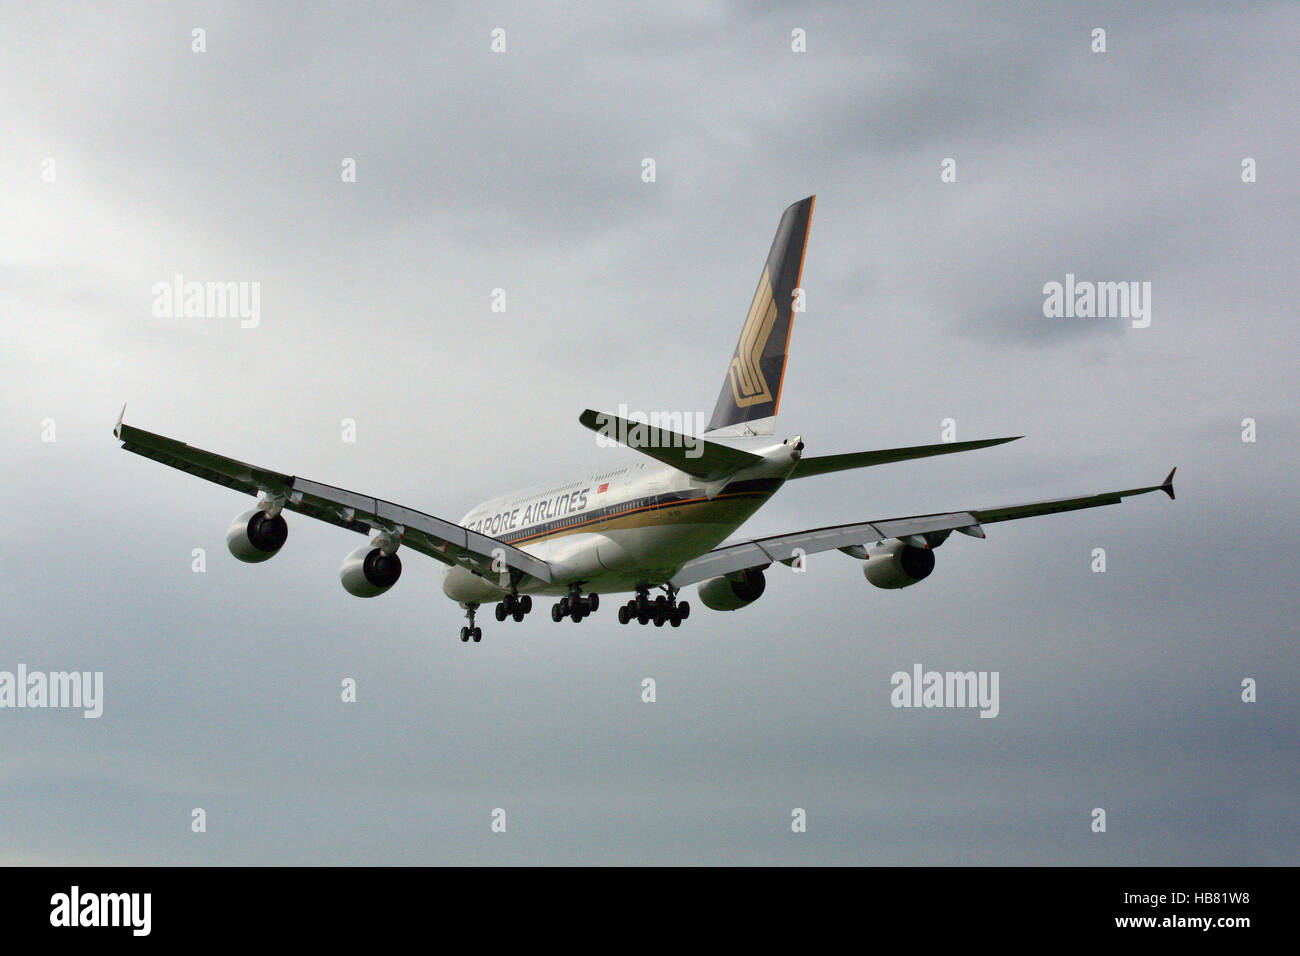 Airbus A380 si sta avvicinando Zuerich airport Foto Stock